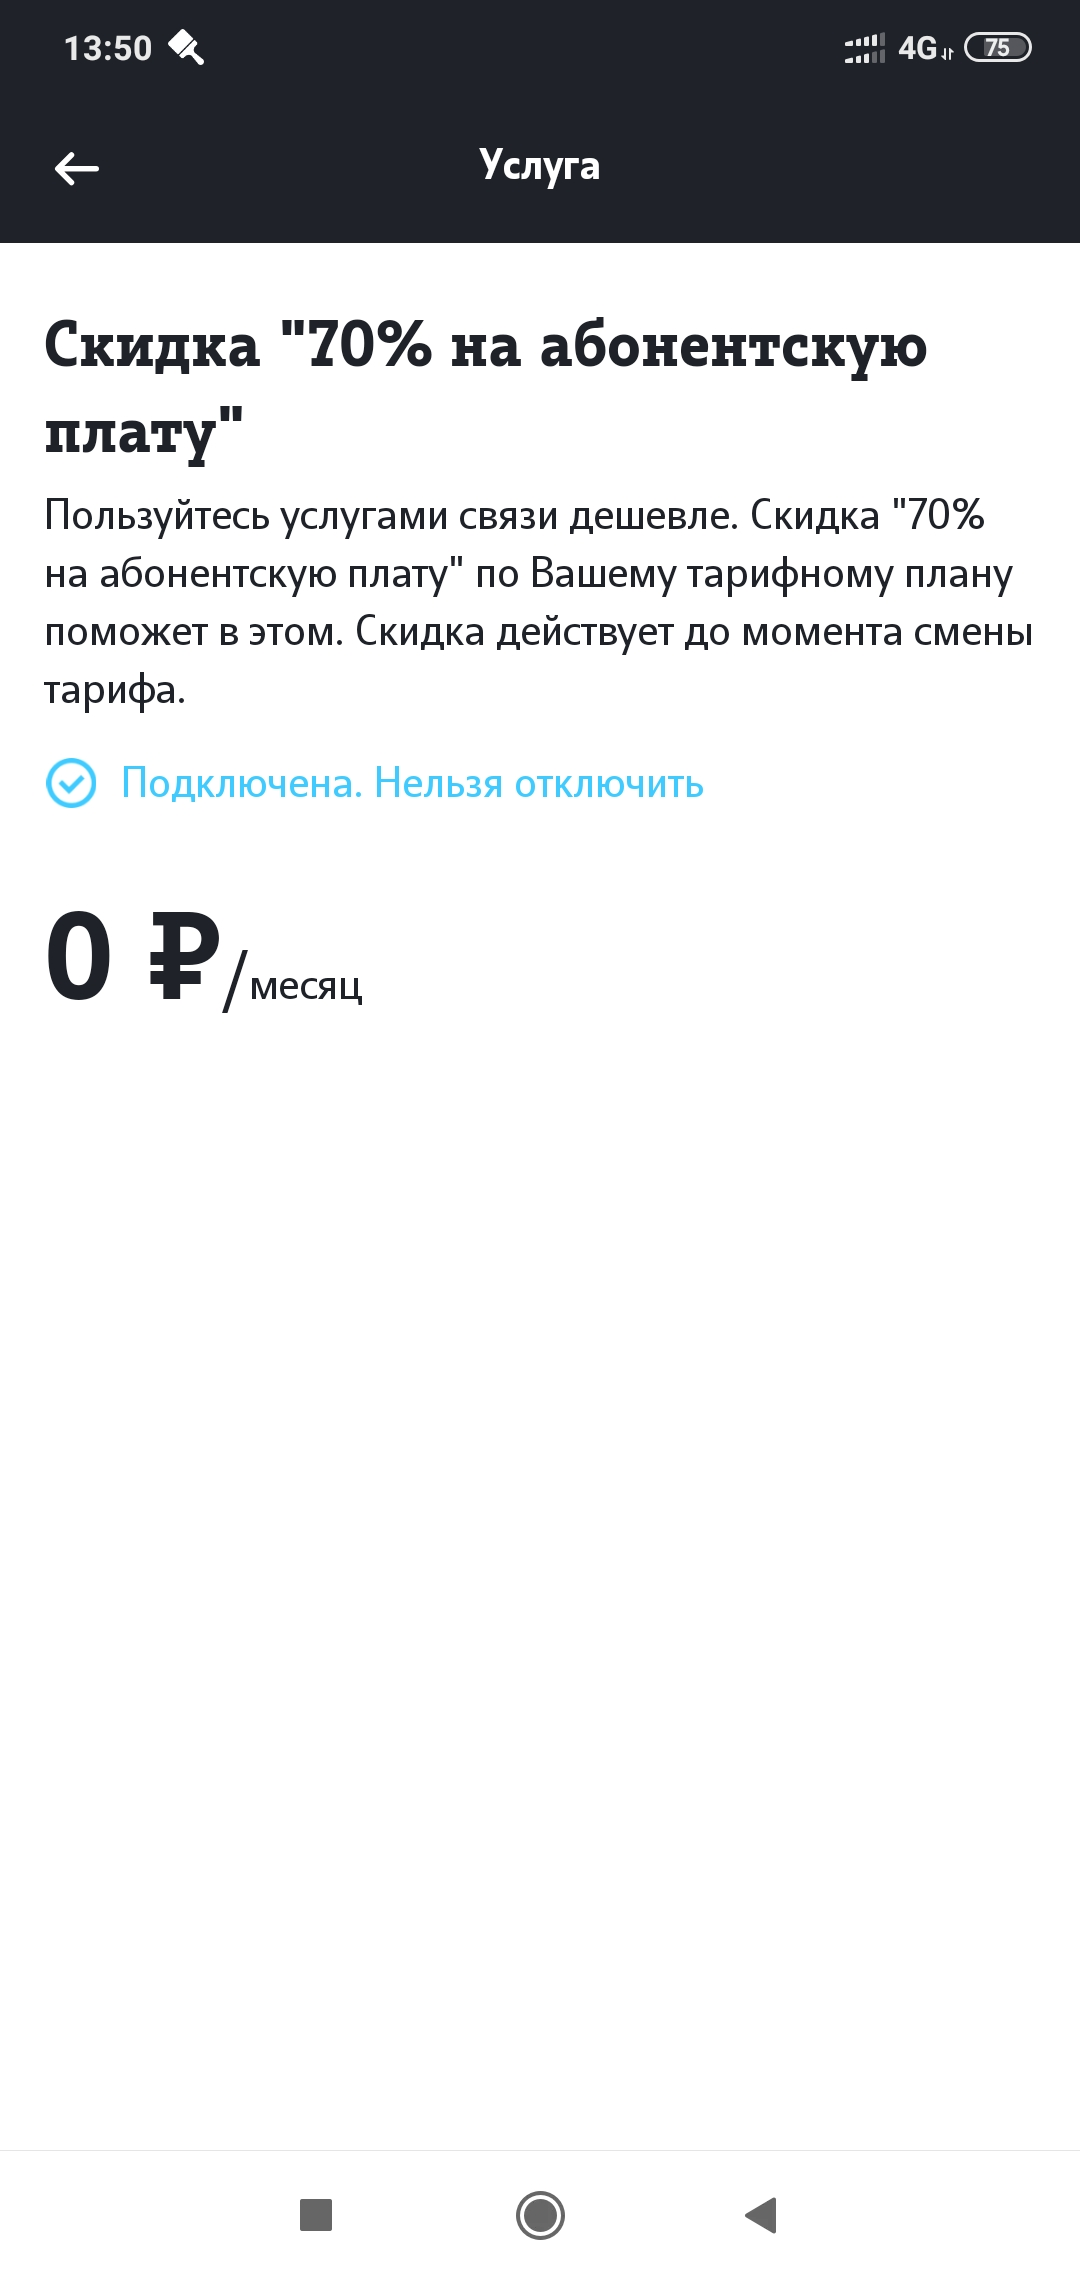 Screenshot_2020-08-19-13-50-26-235_ru.tele2.mytele2.jpg